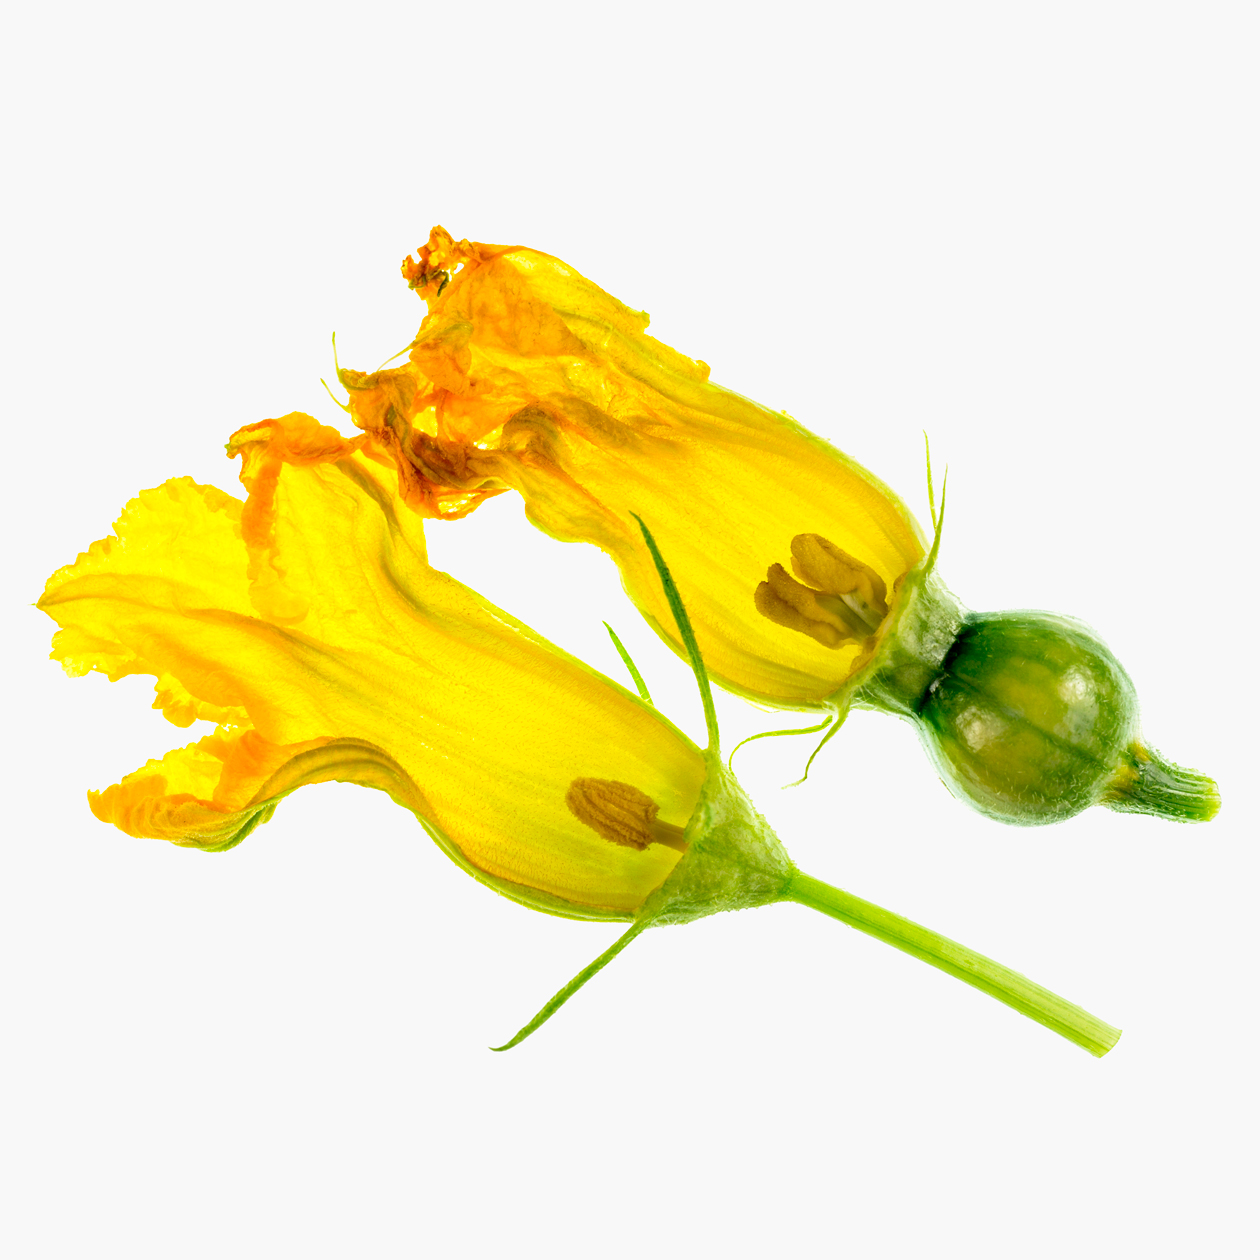 Женский цветок уже с маленькой тыковкой. Фотография: ribeiroantonio / Shutterstock / FOTODOM